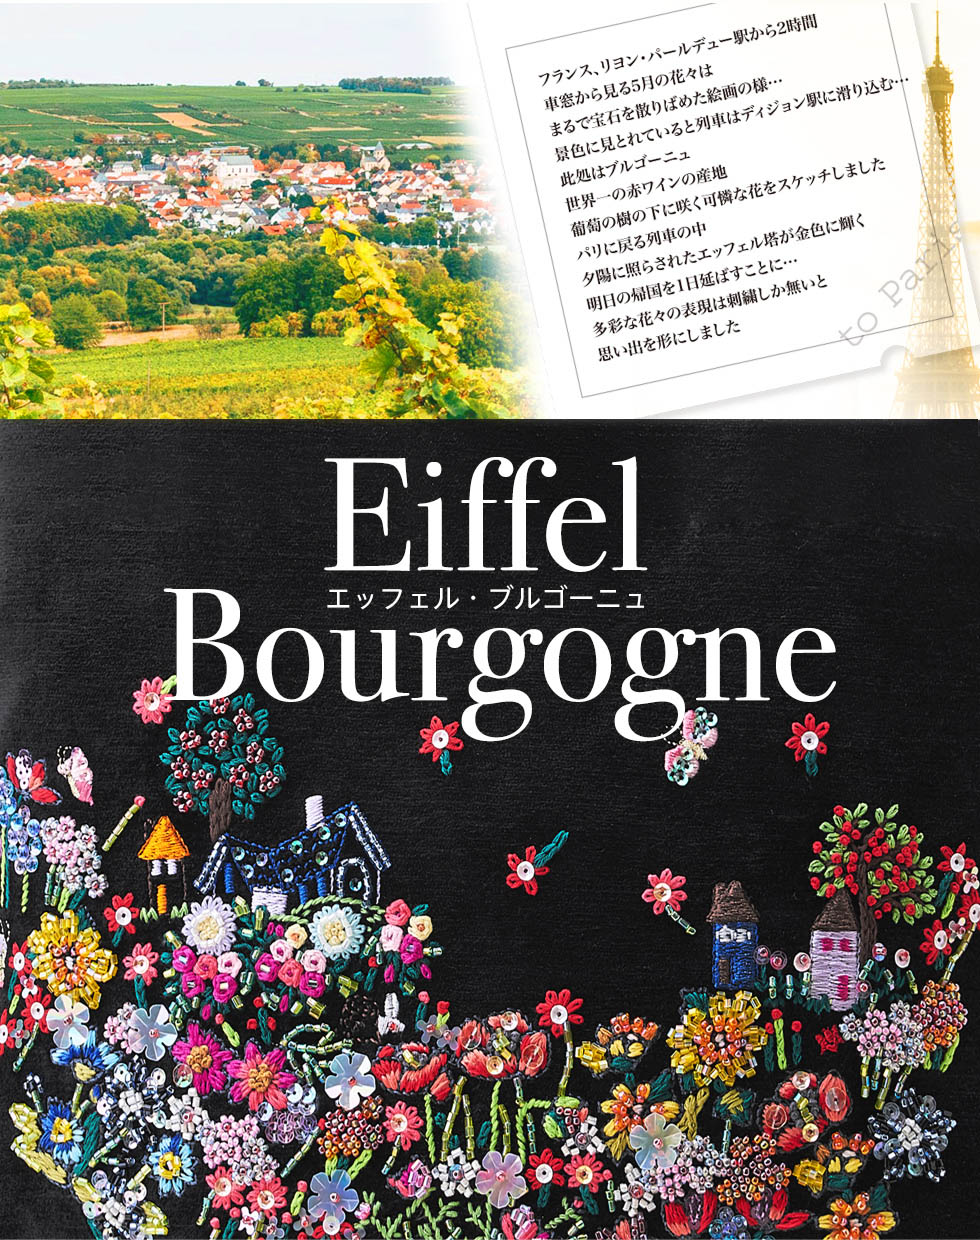 Eiffel Bourgogne